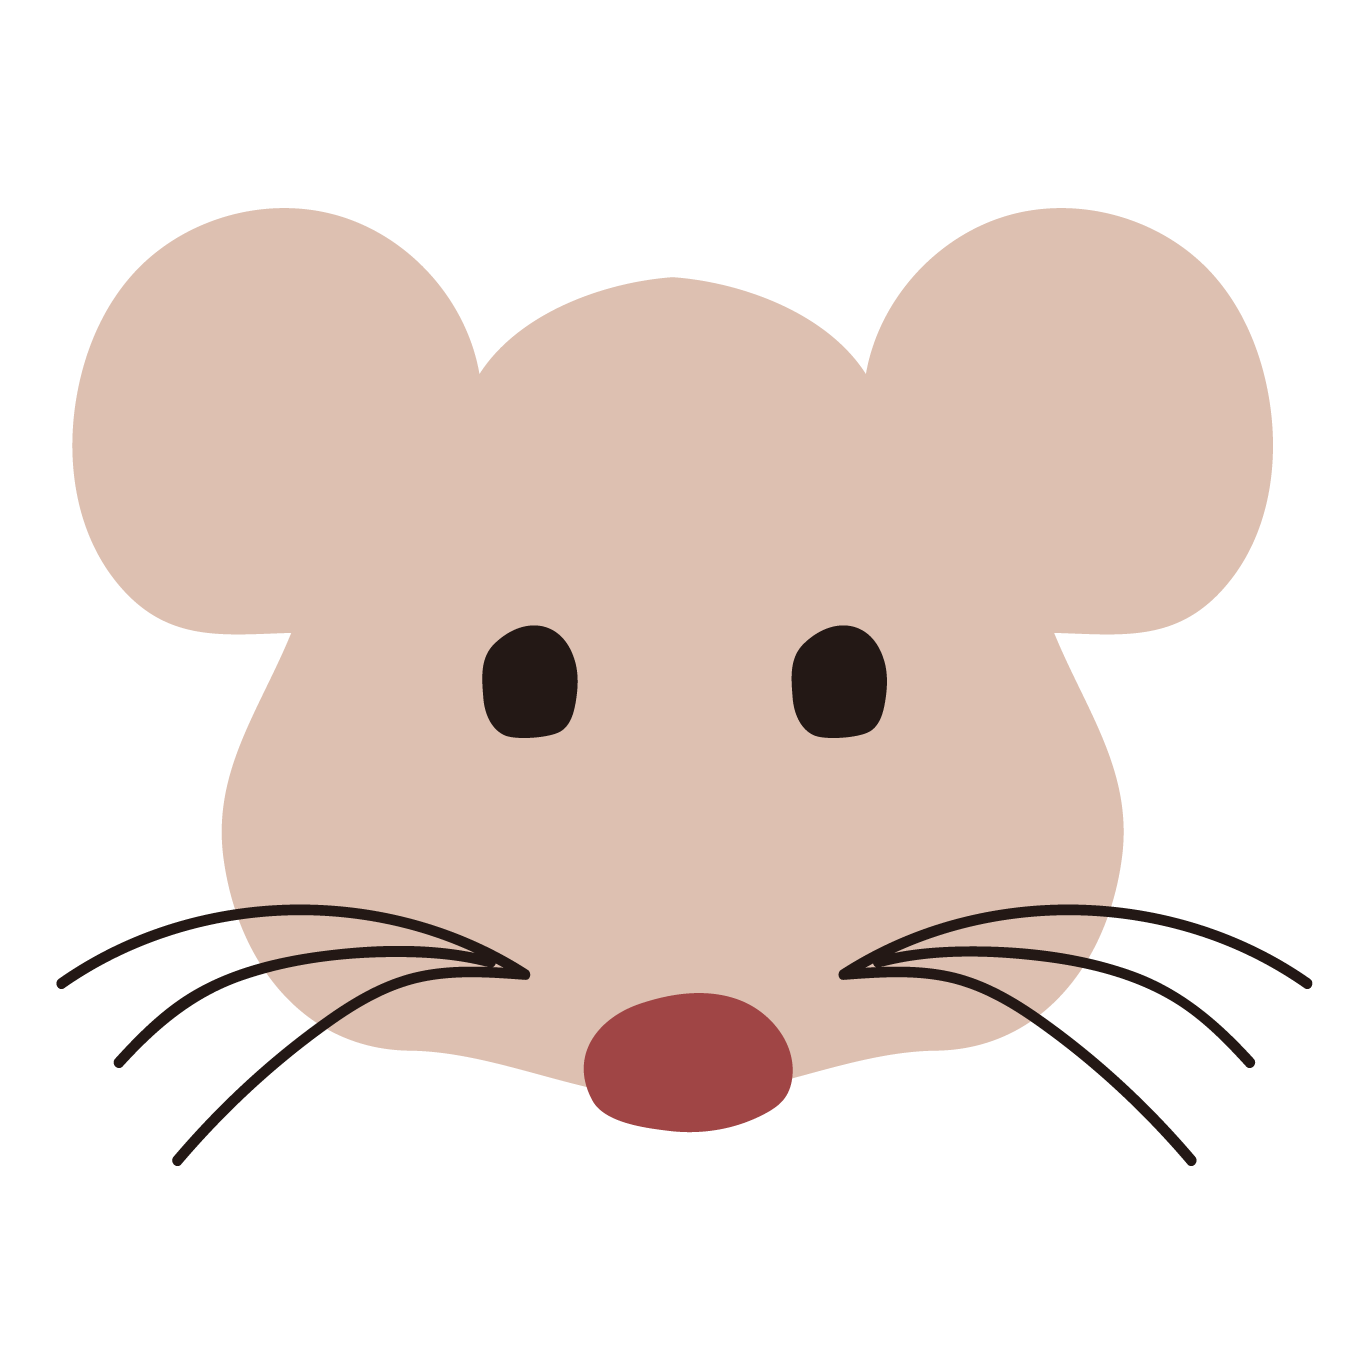 ネズミ ねずみ 鼠 の顔の 無料 イラスト 商用フリー 無料 のイラスト素材なら イラストマンション